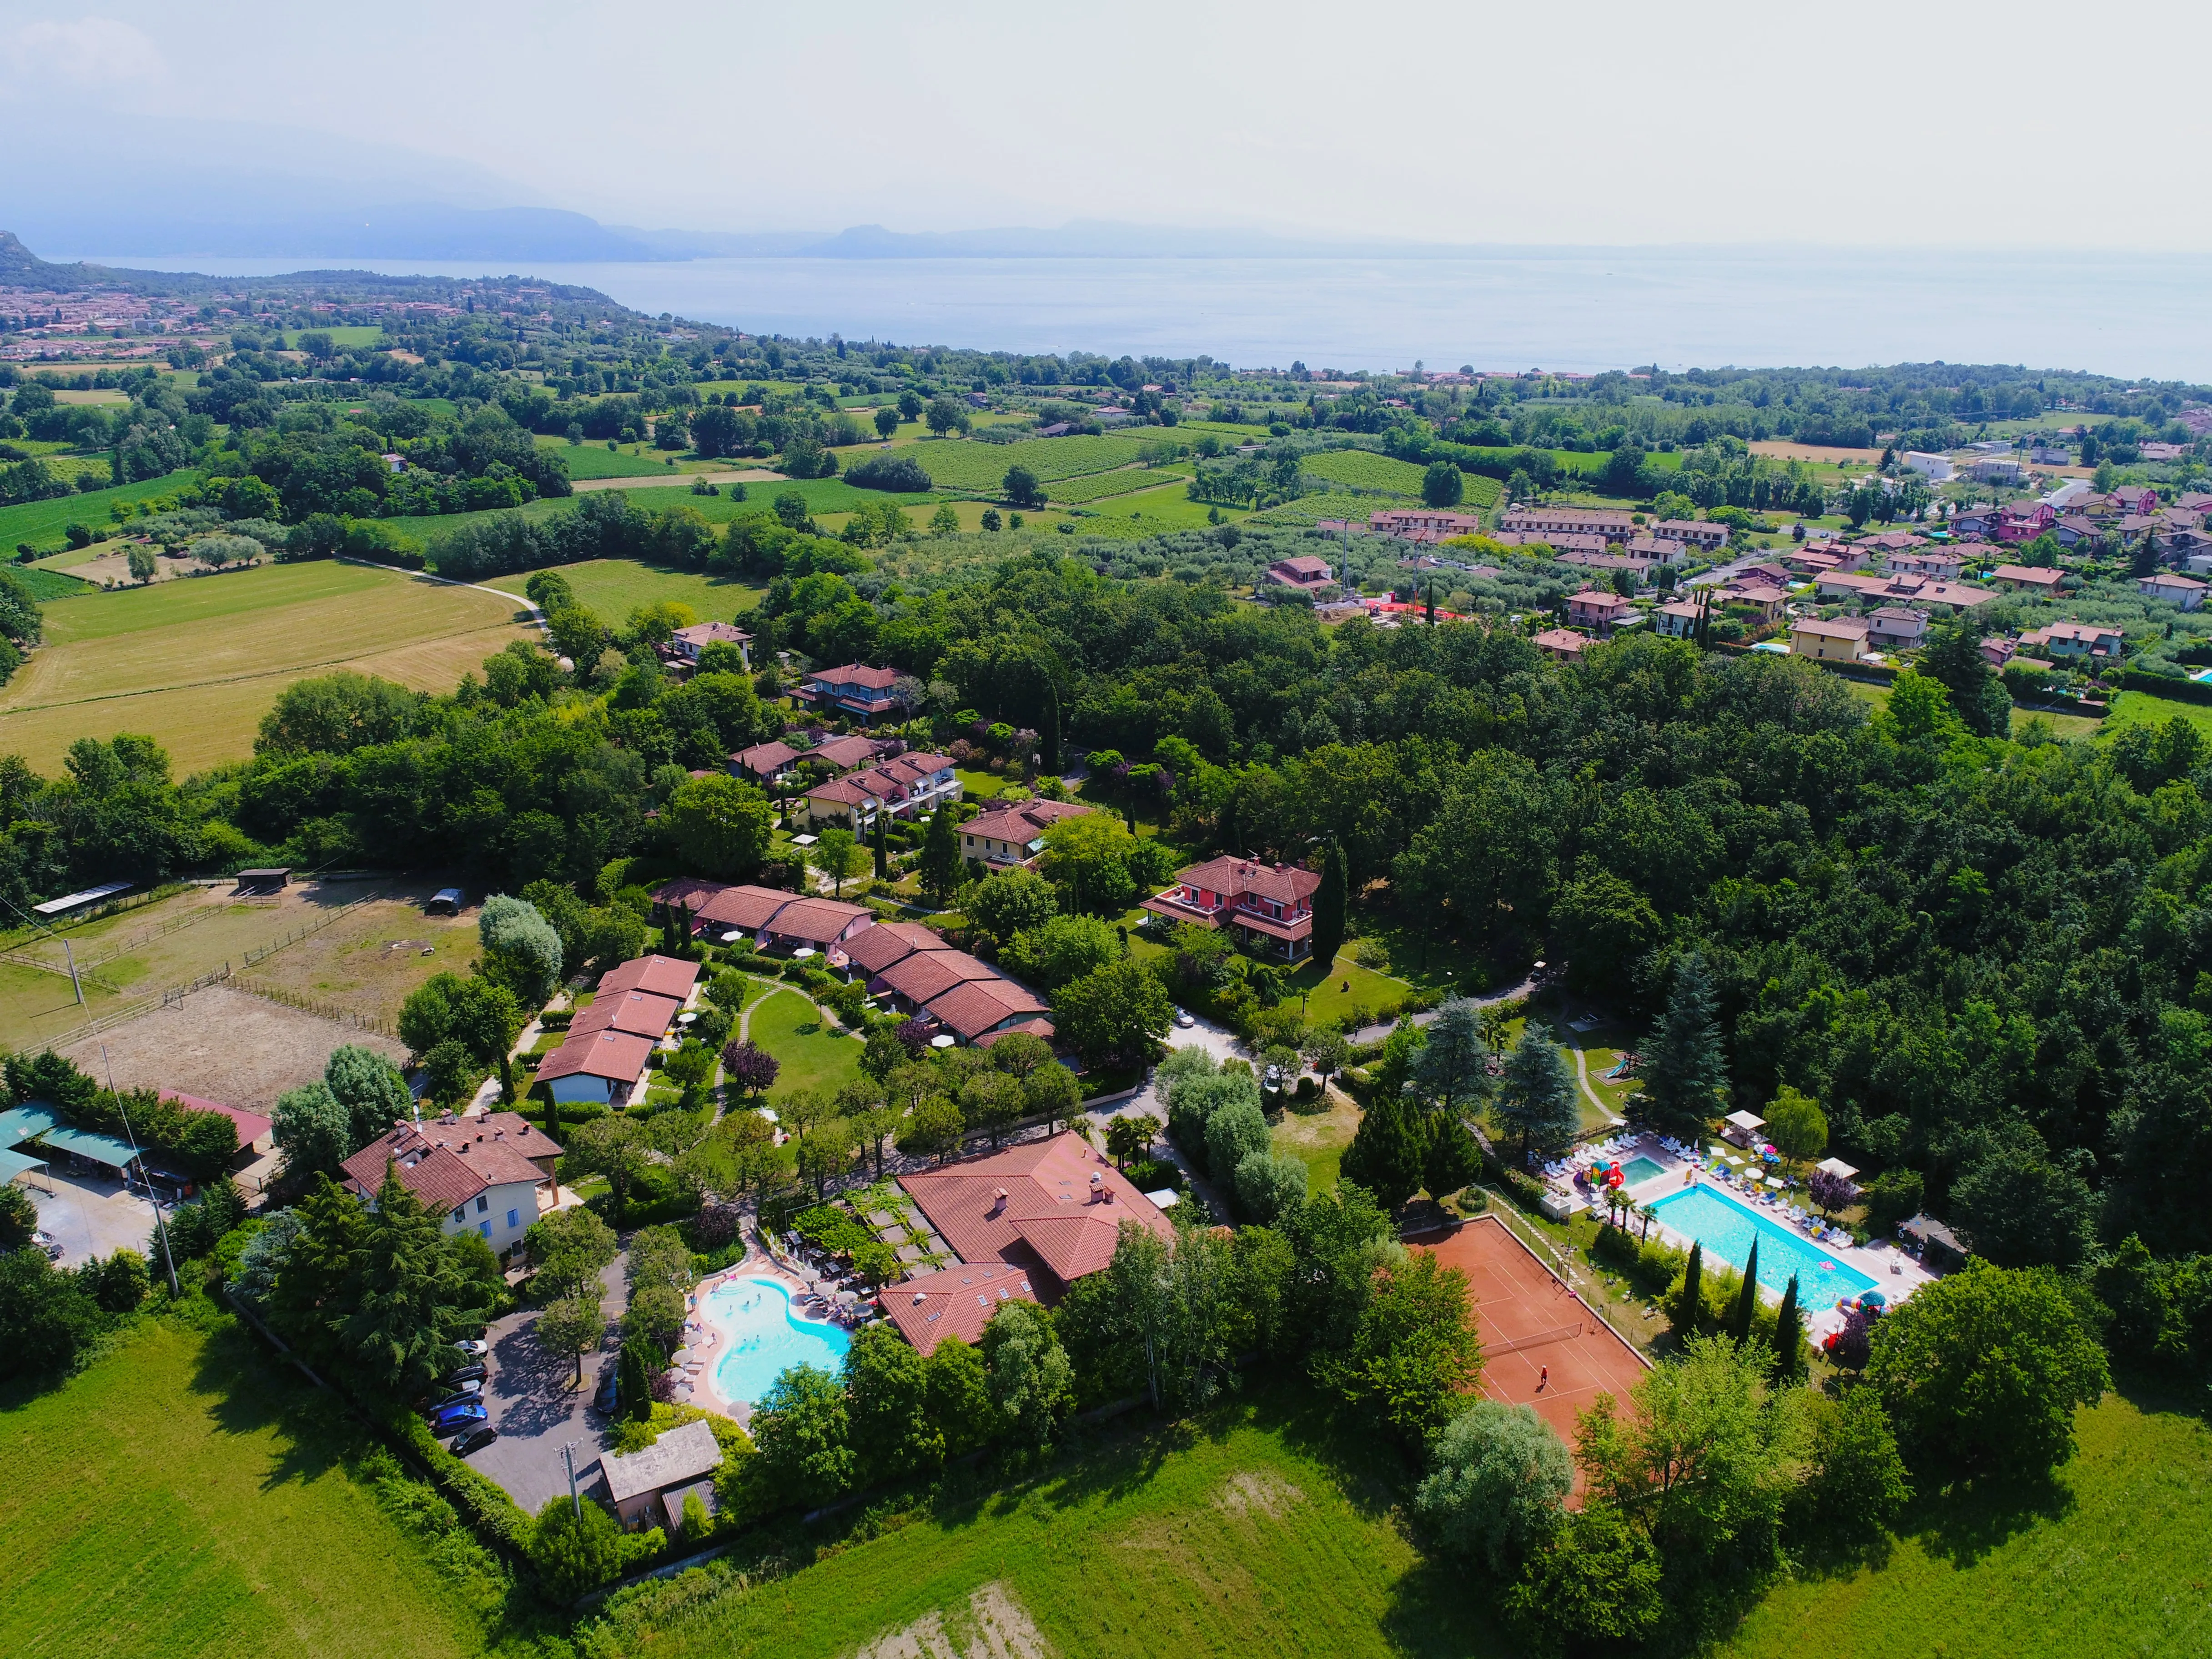 Die Saison Vacanze col Cuore hat begonnen: Die Gabbiano Park Residence wird wiedereröffnet!